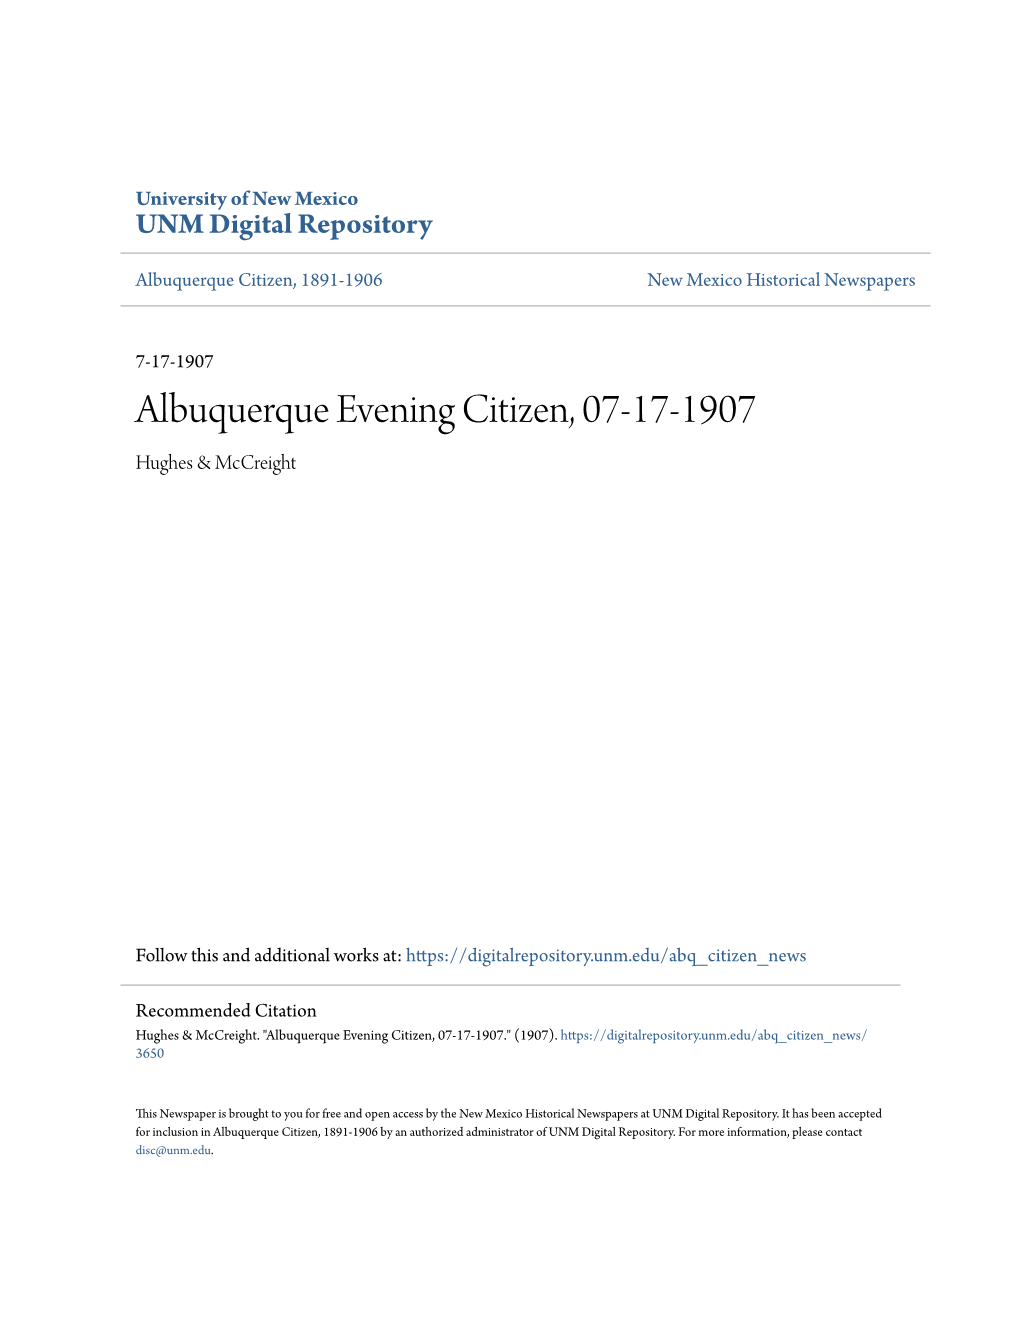 Albuquerque Evening Citizen, 07-17-1907 Hughes & Mccreight